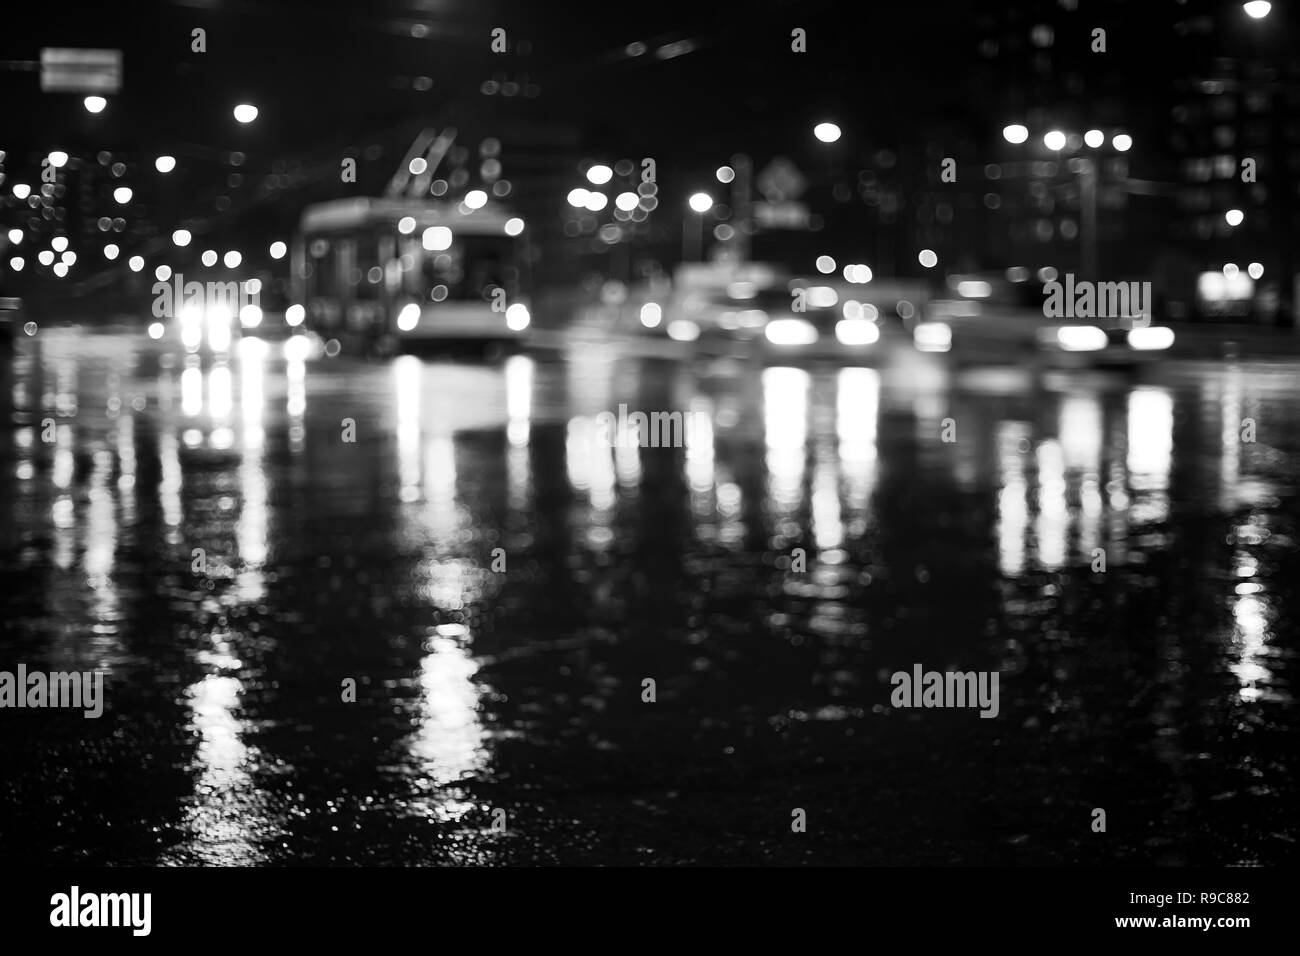 Rainy city road durante la notte con le luci di riflessione. Abstract defocalizzata immagine in bianco e nero Foto Stock